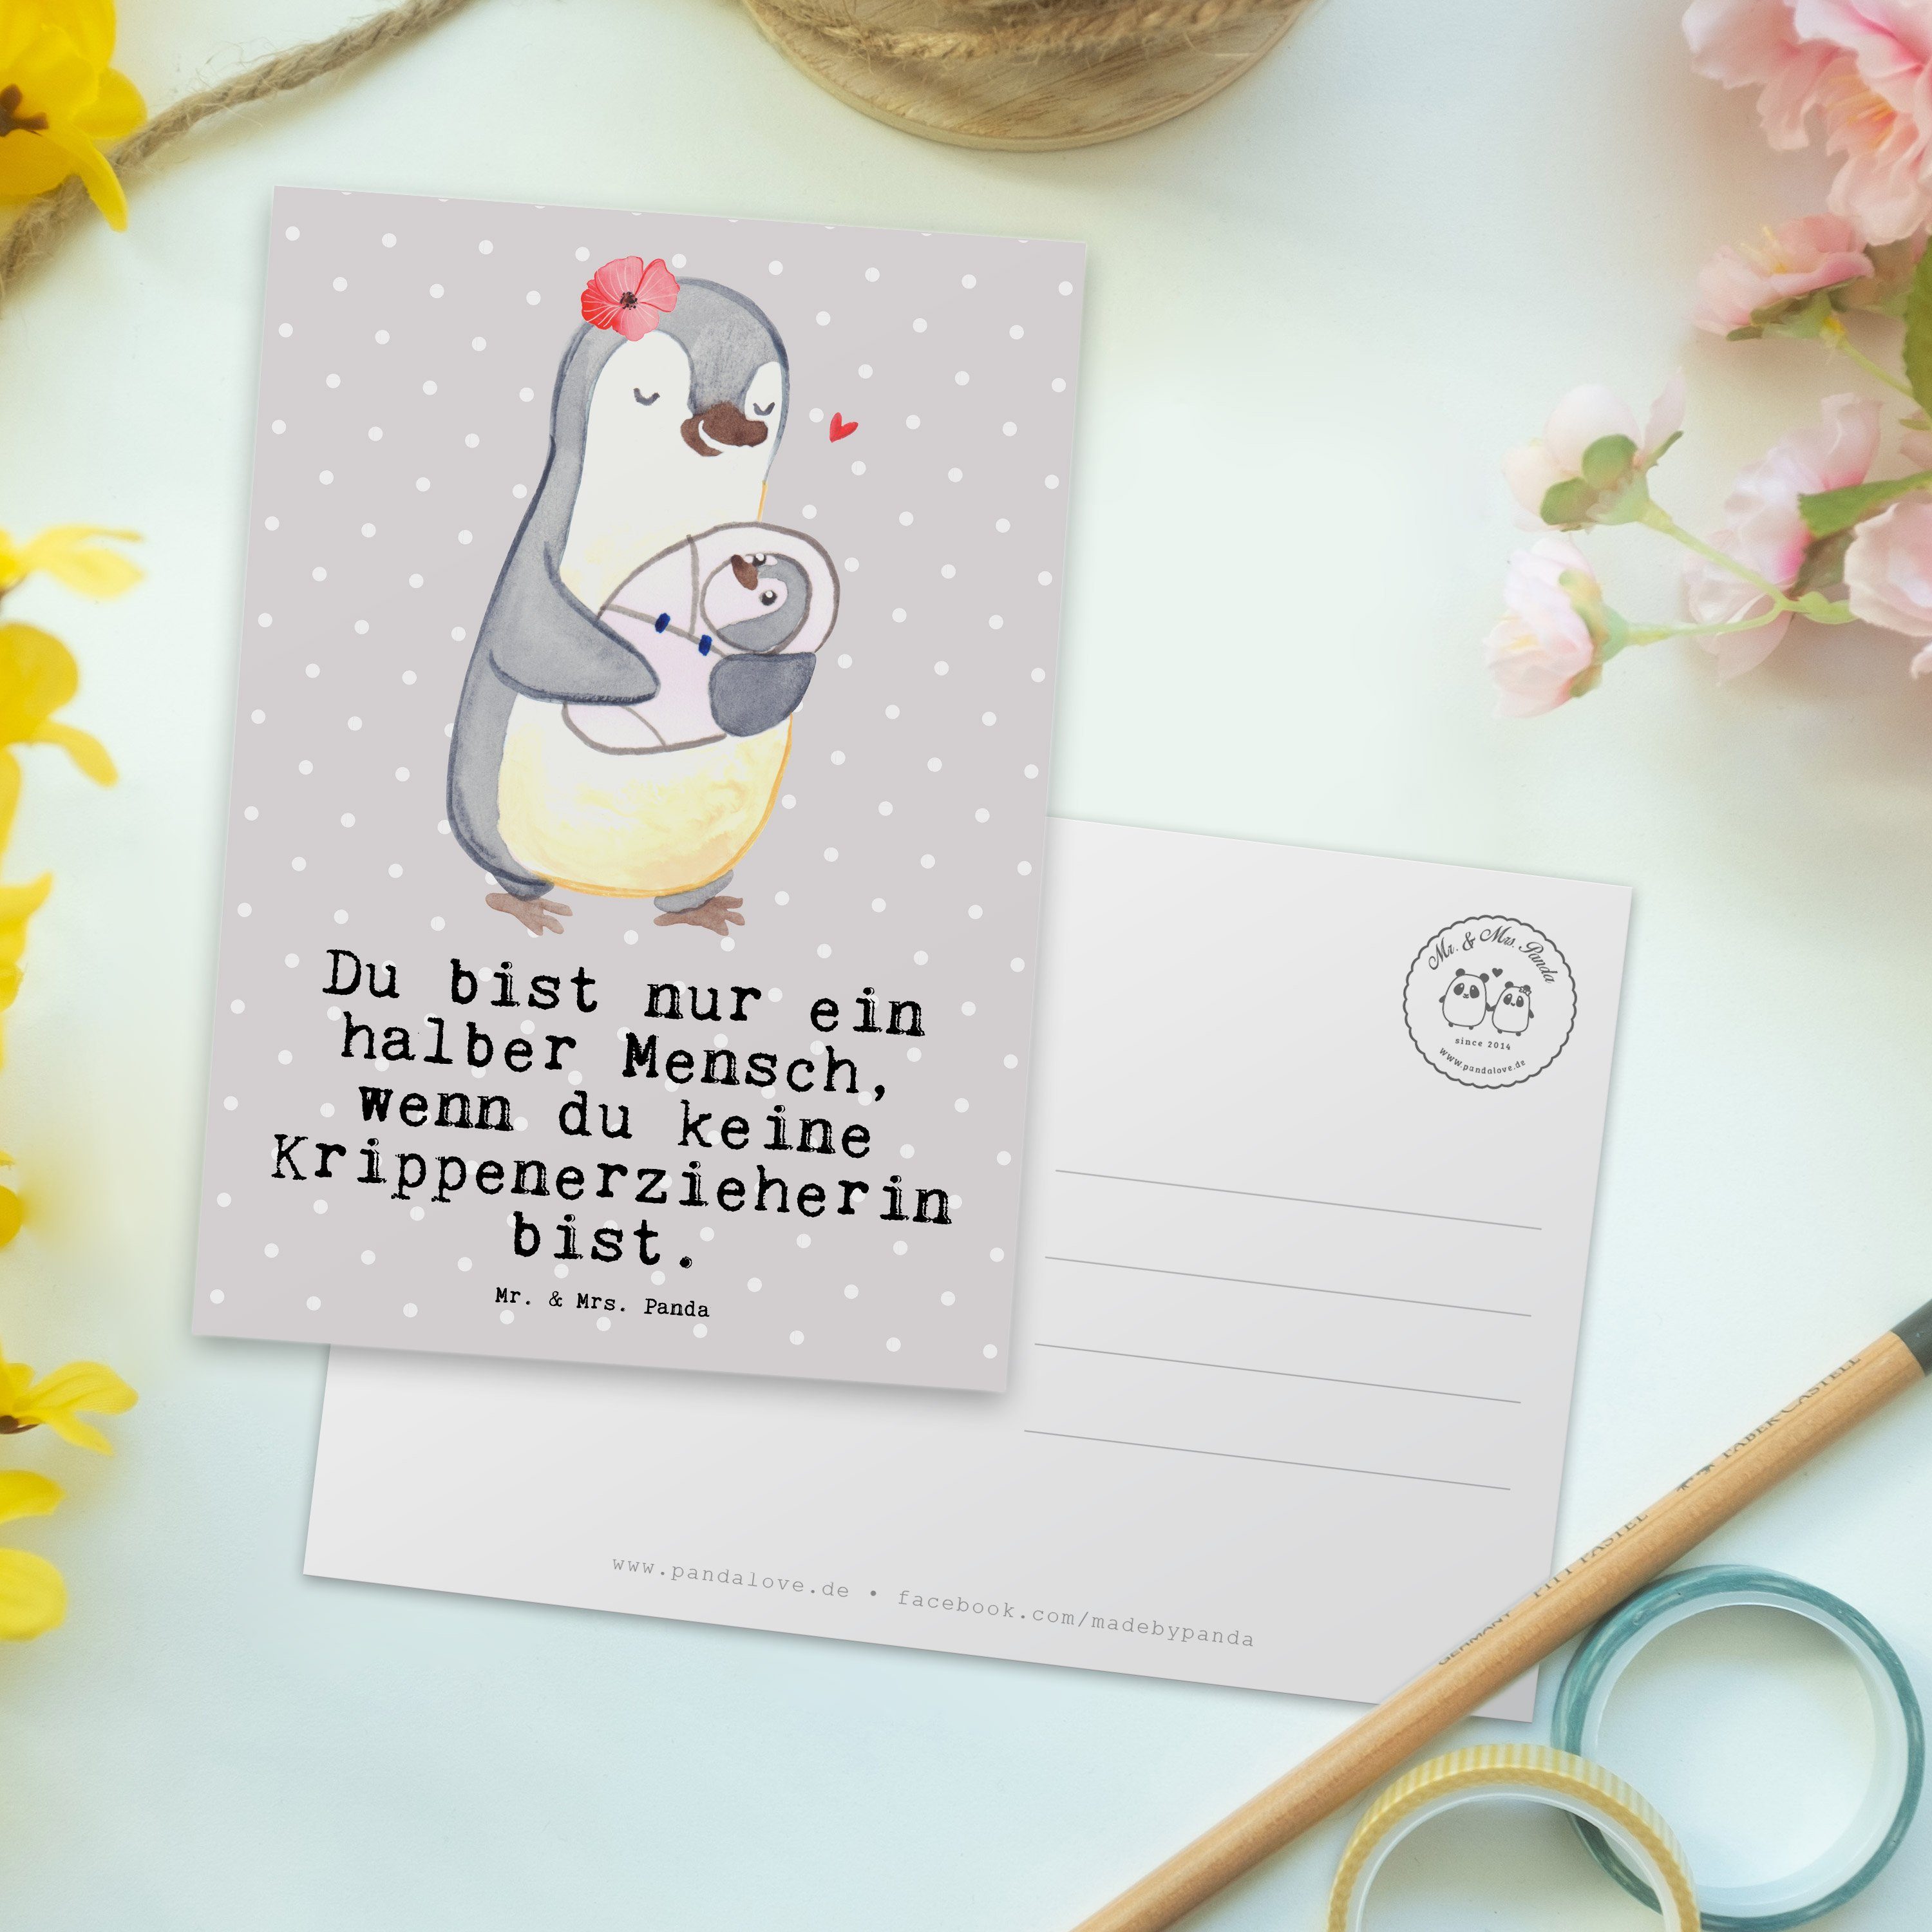 Grau - Panda Mrs. - Krippenerzieherin mit Einl Geschenk, Herz Pädagogin, Mr. Pastell & Postkarte